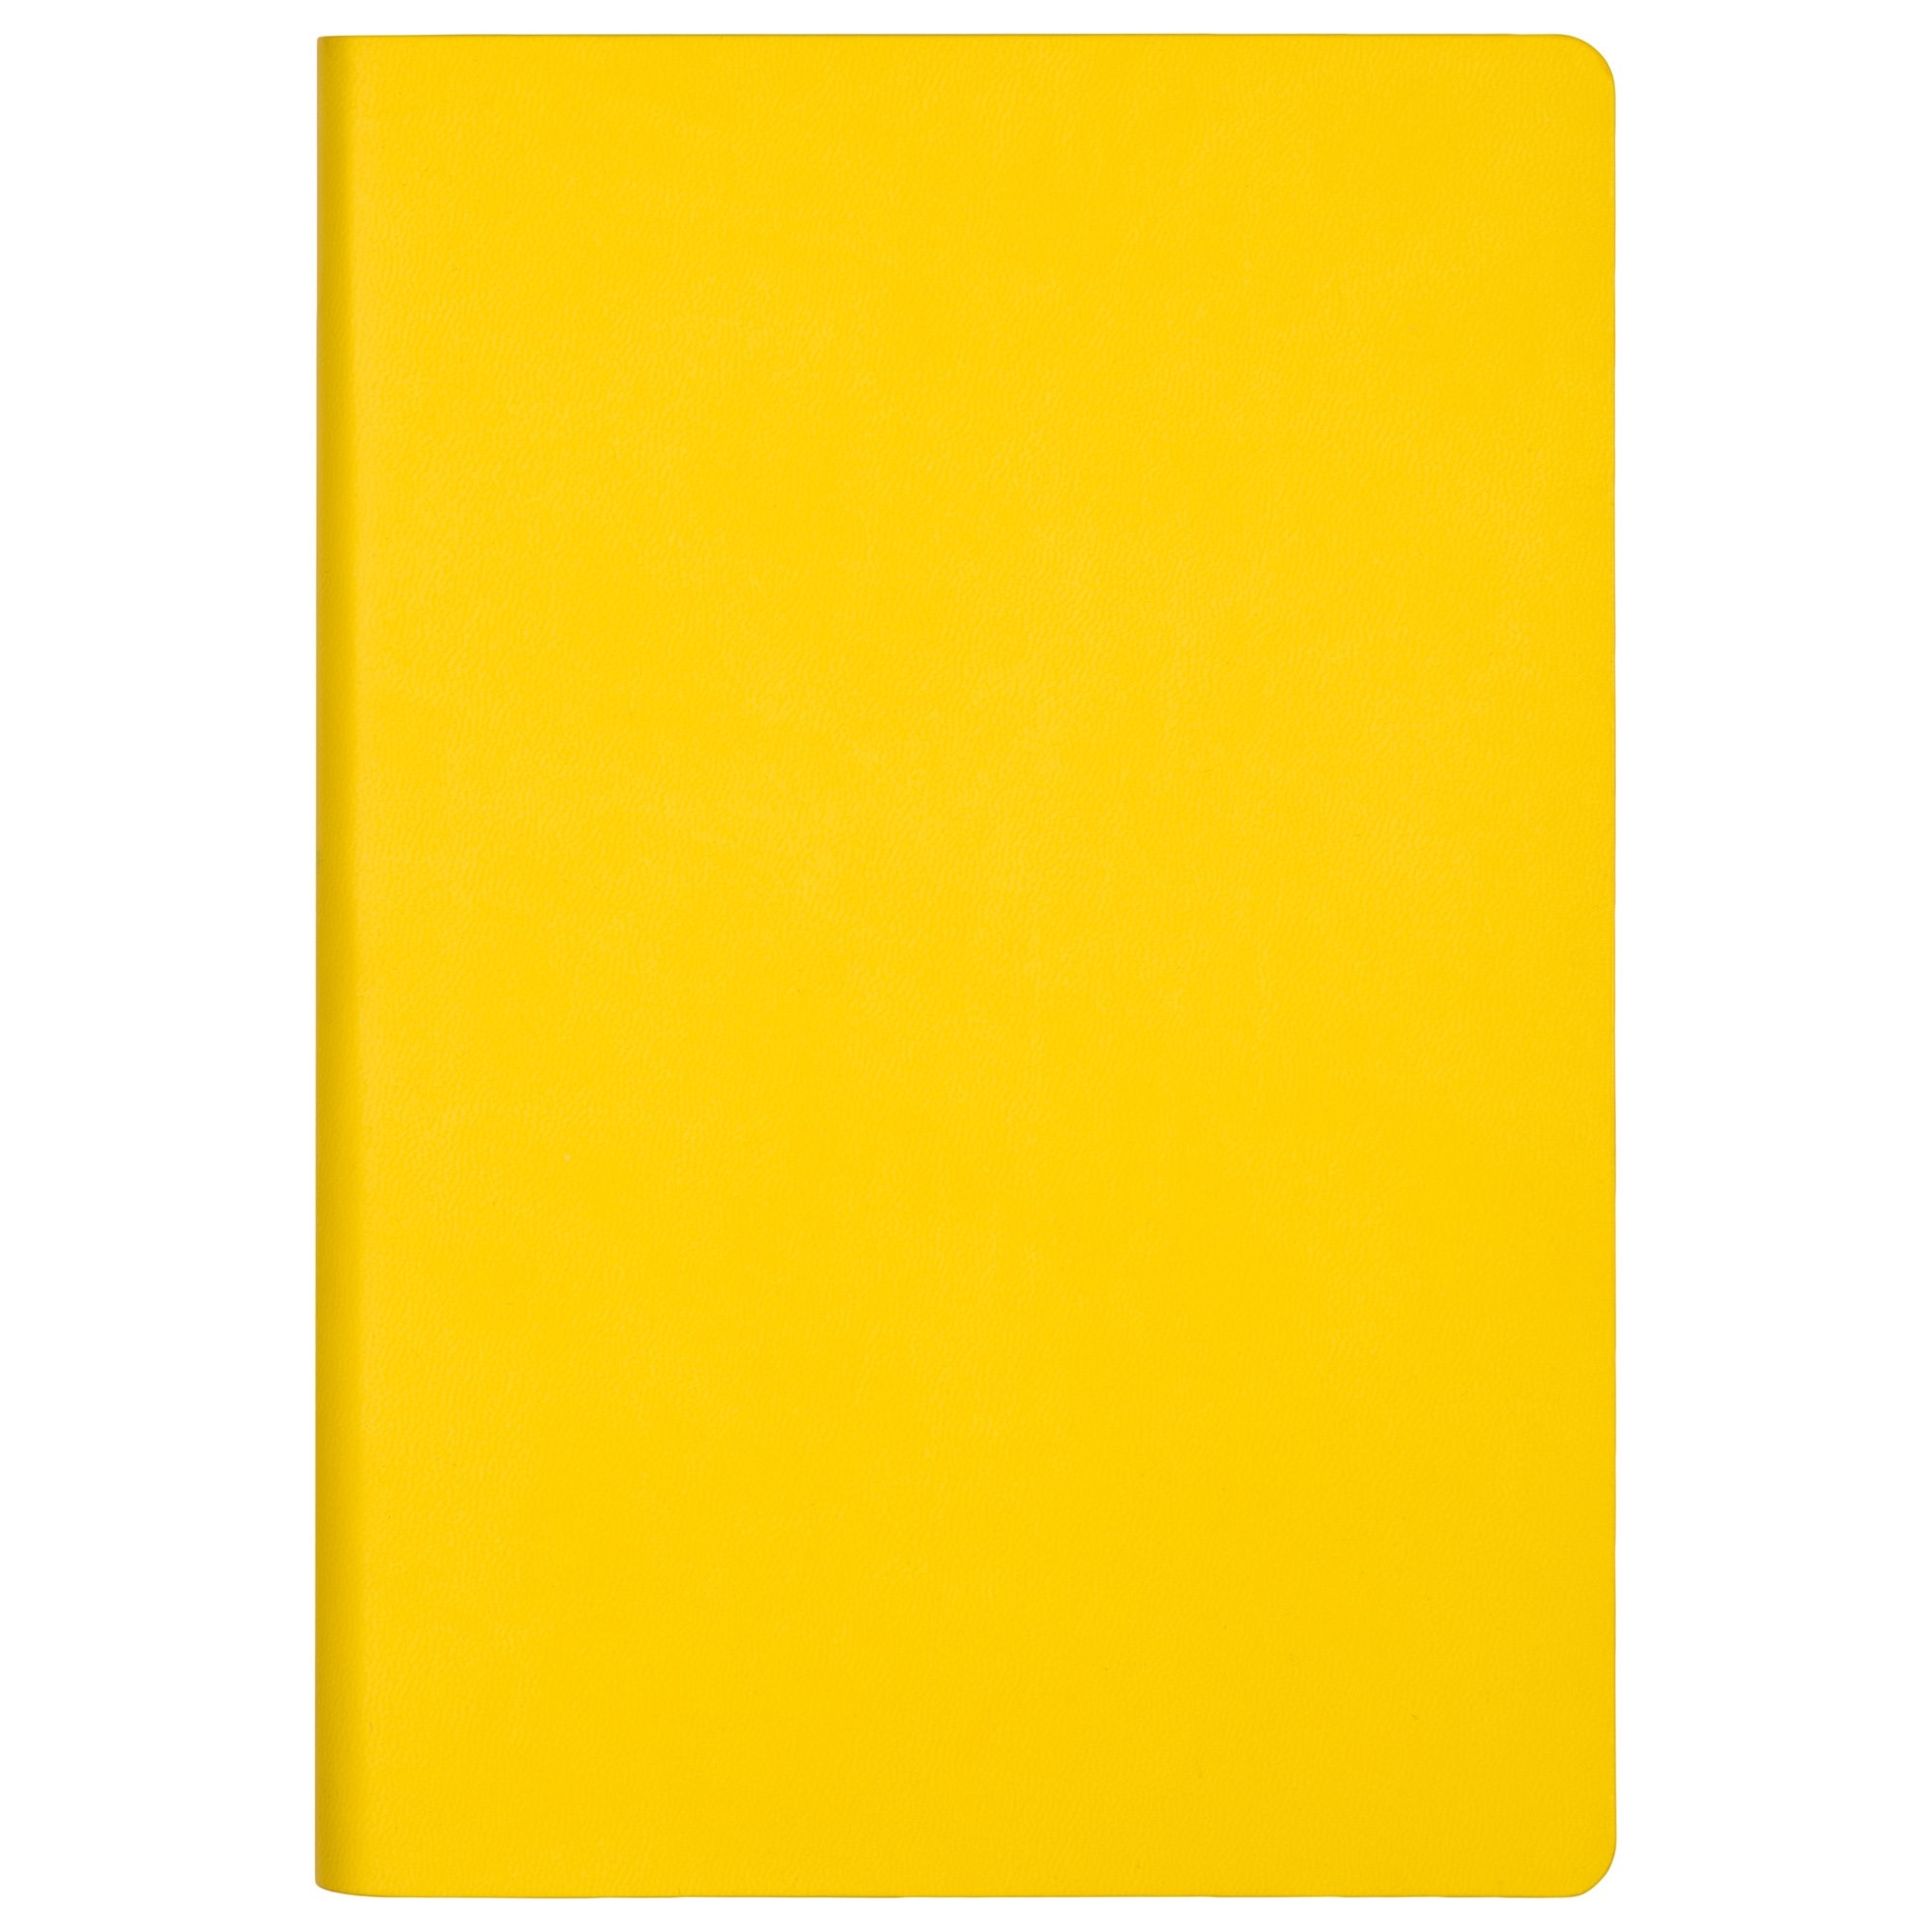 Ежедневник Sky недатированный, желтый (без упаковки, без стикера), желтый